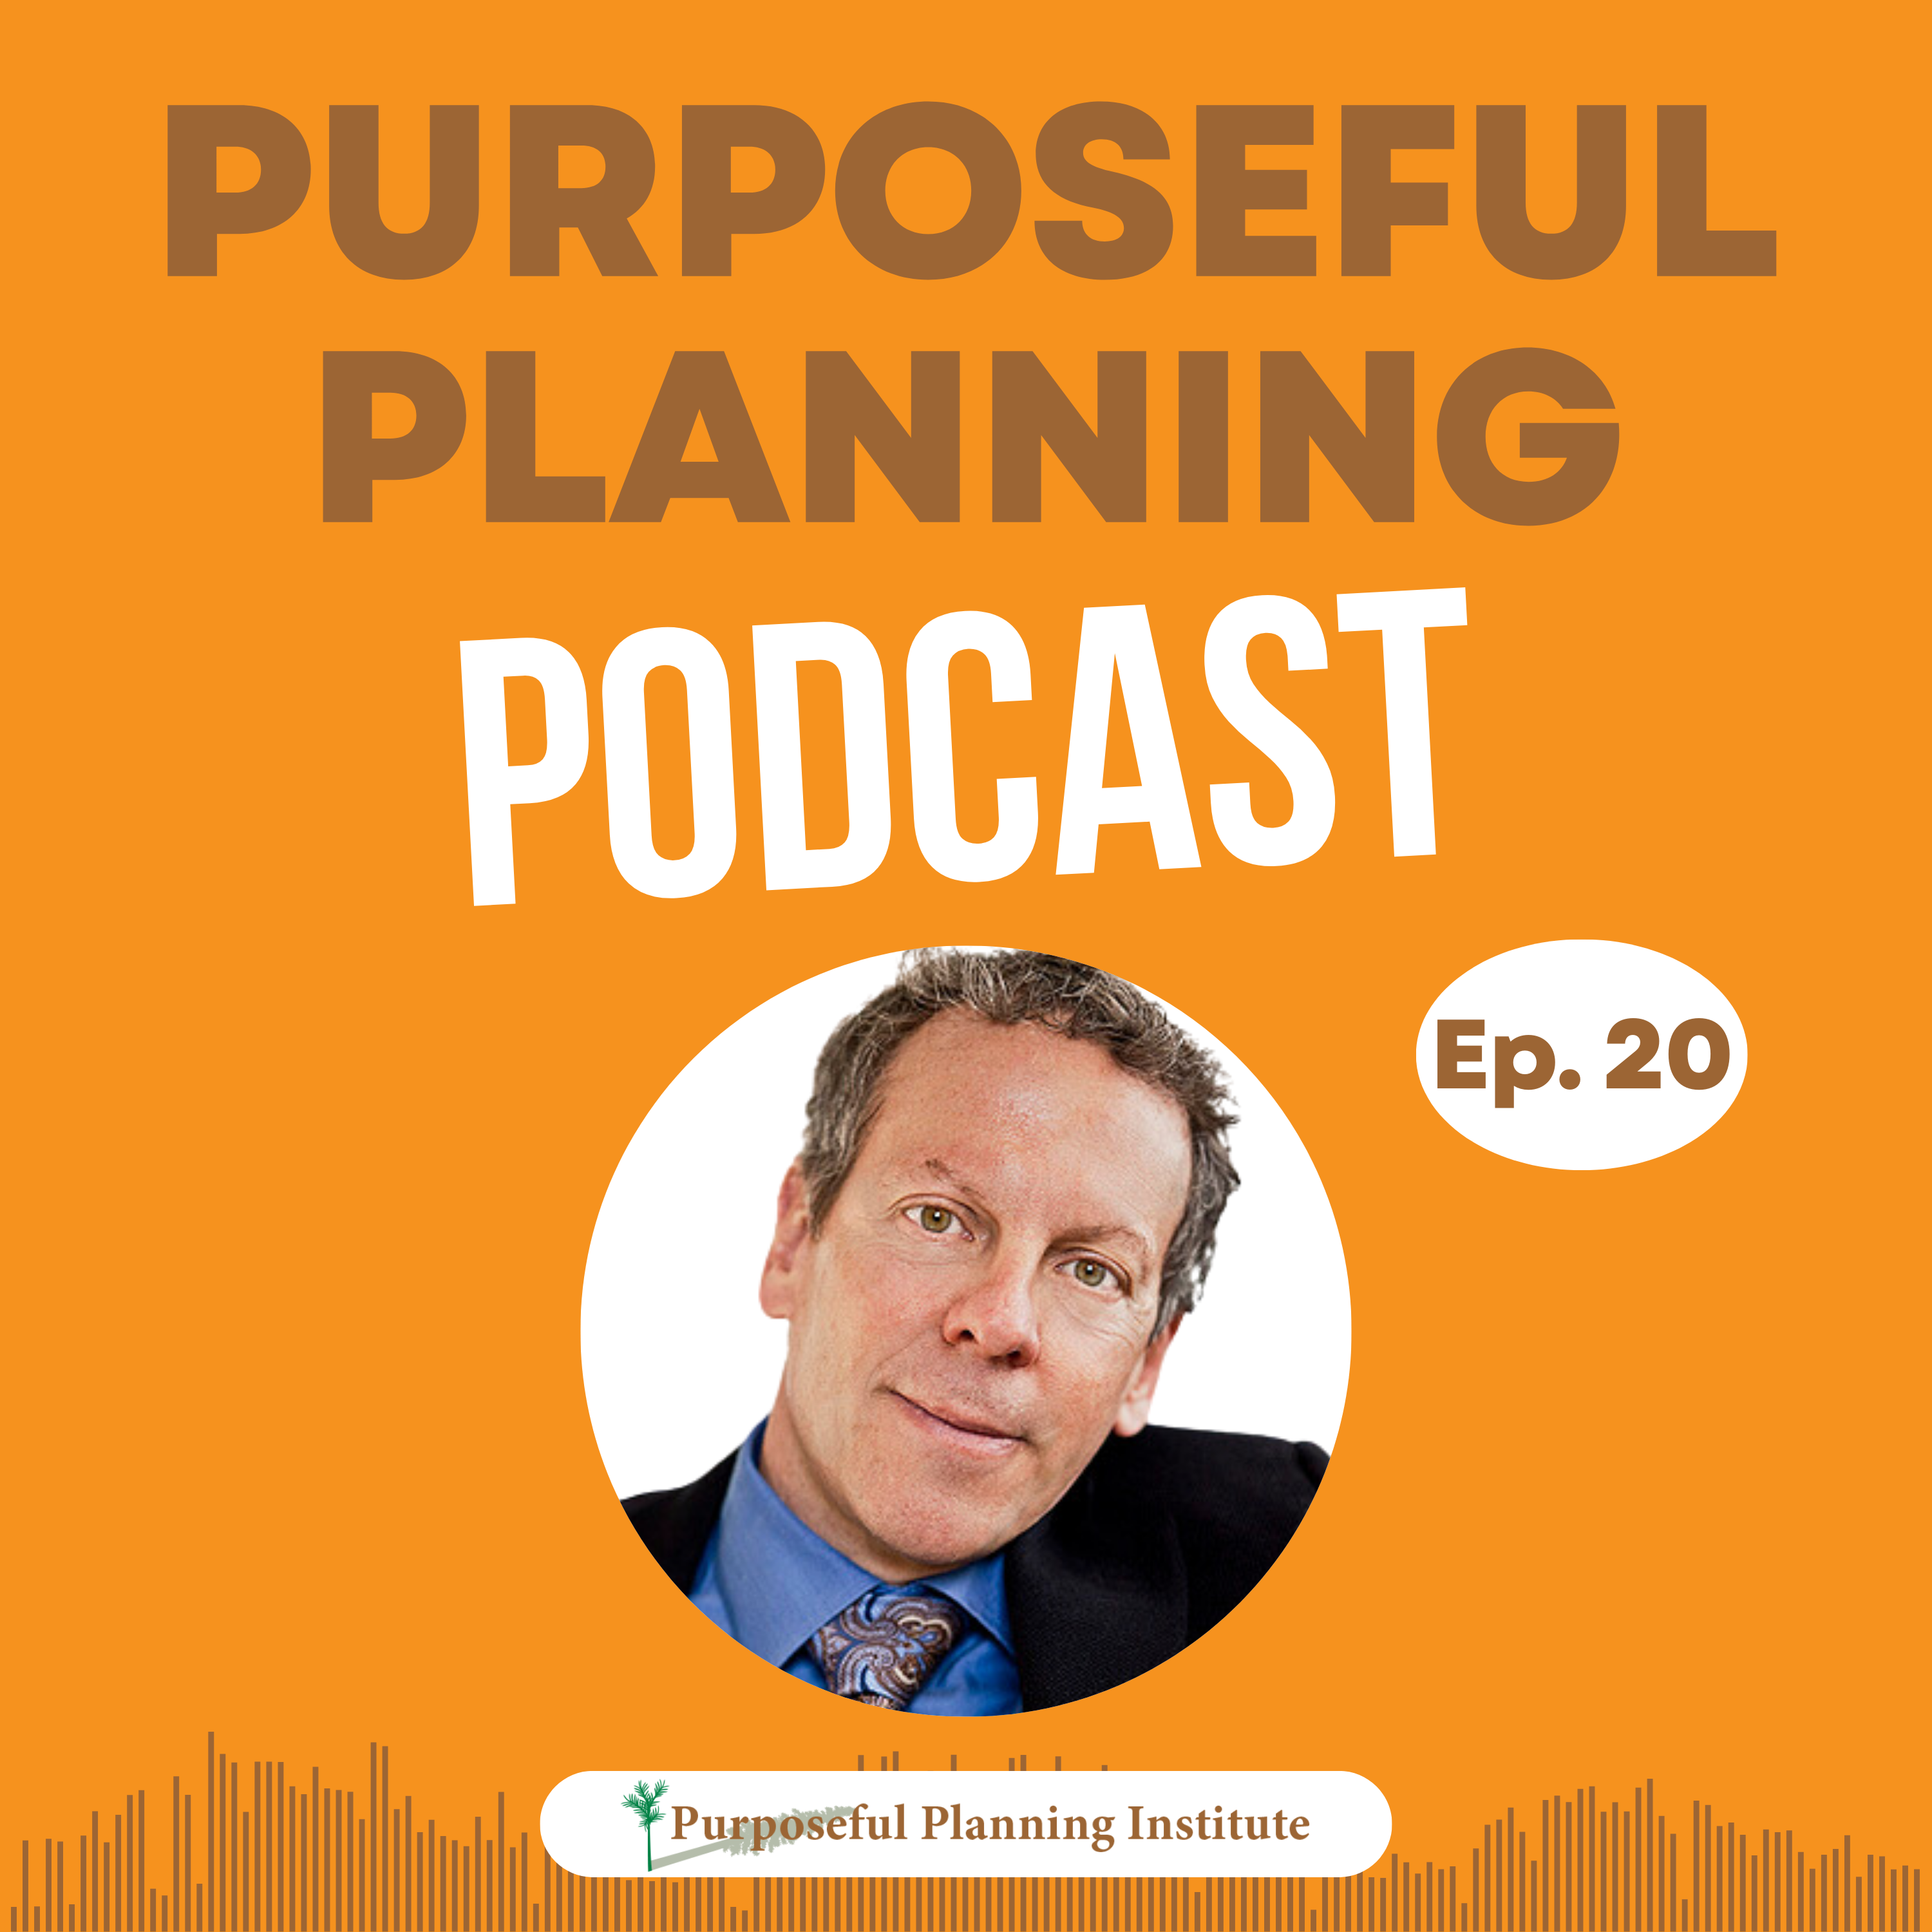 Podcasts - Purposeful Planning Institute